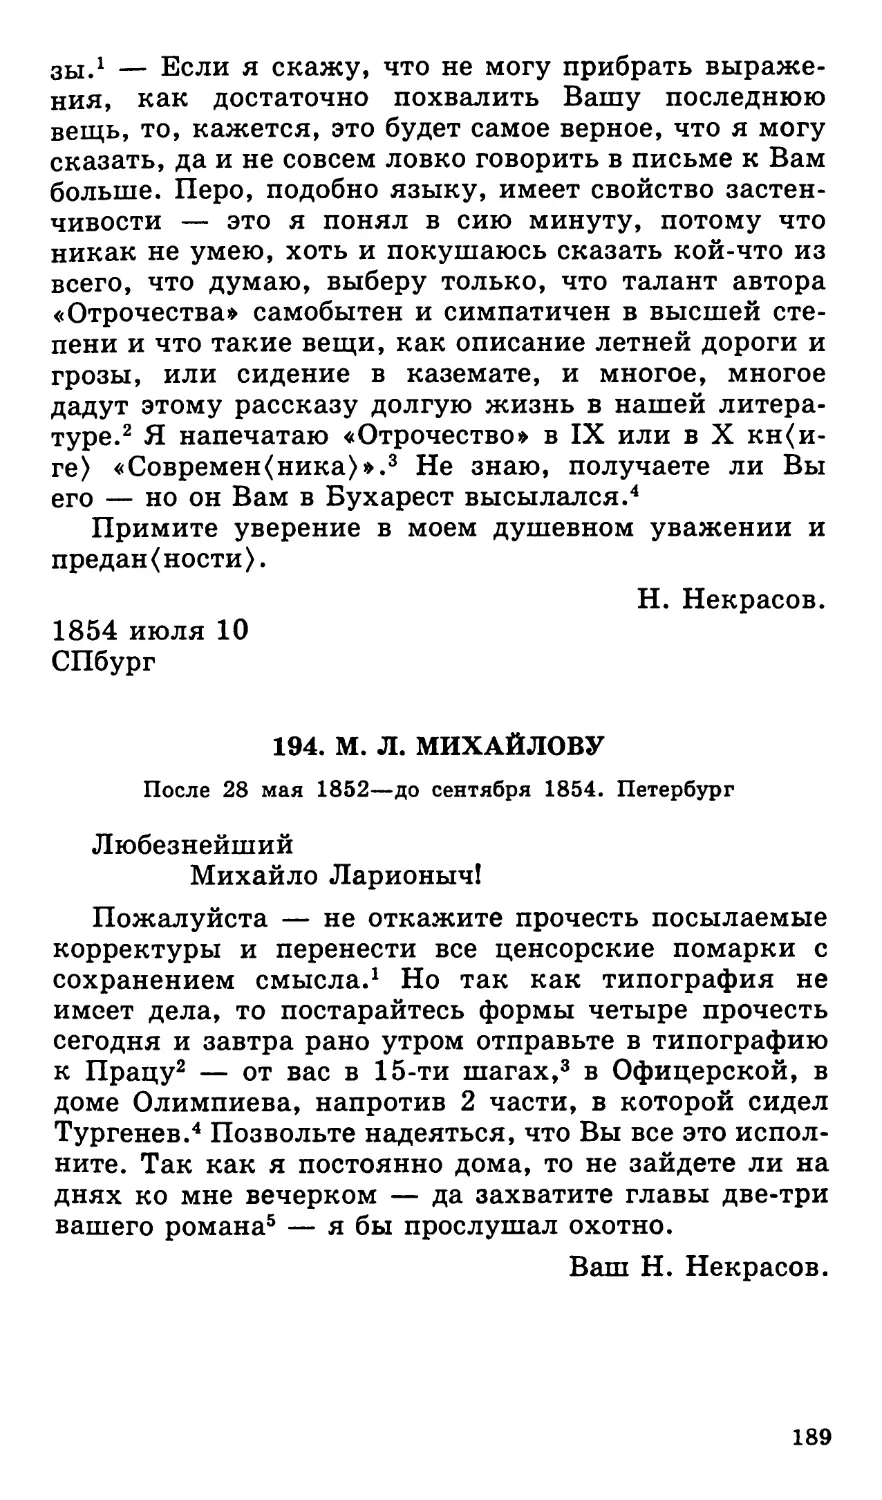 194. М. Л. Михайлову. После 28 мая 1852—до сентября 1854